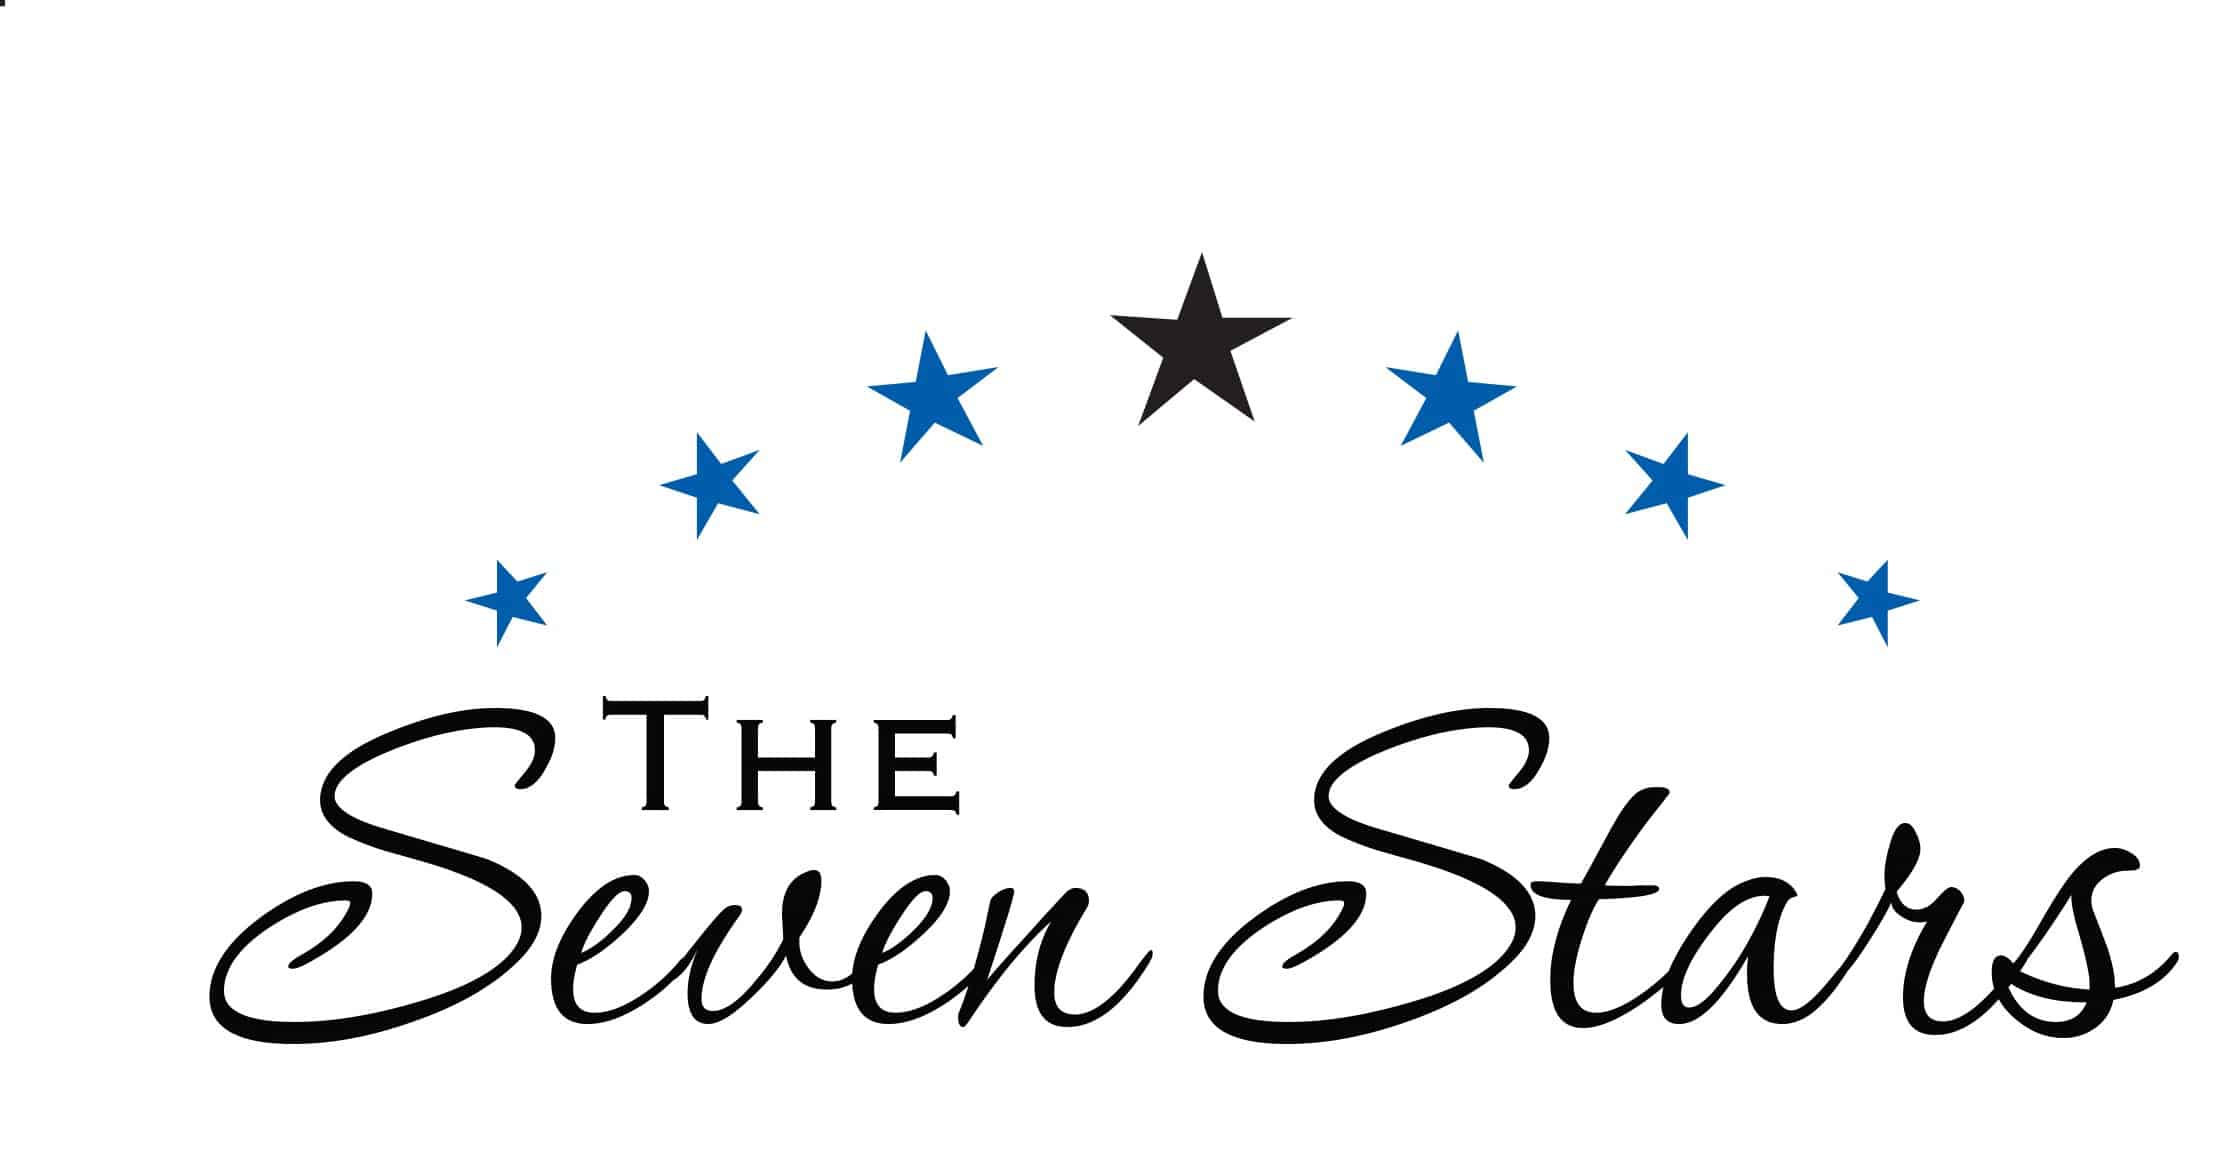 The seven start logo